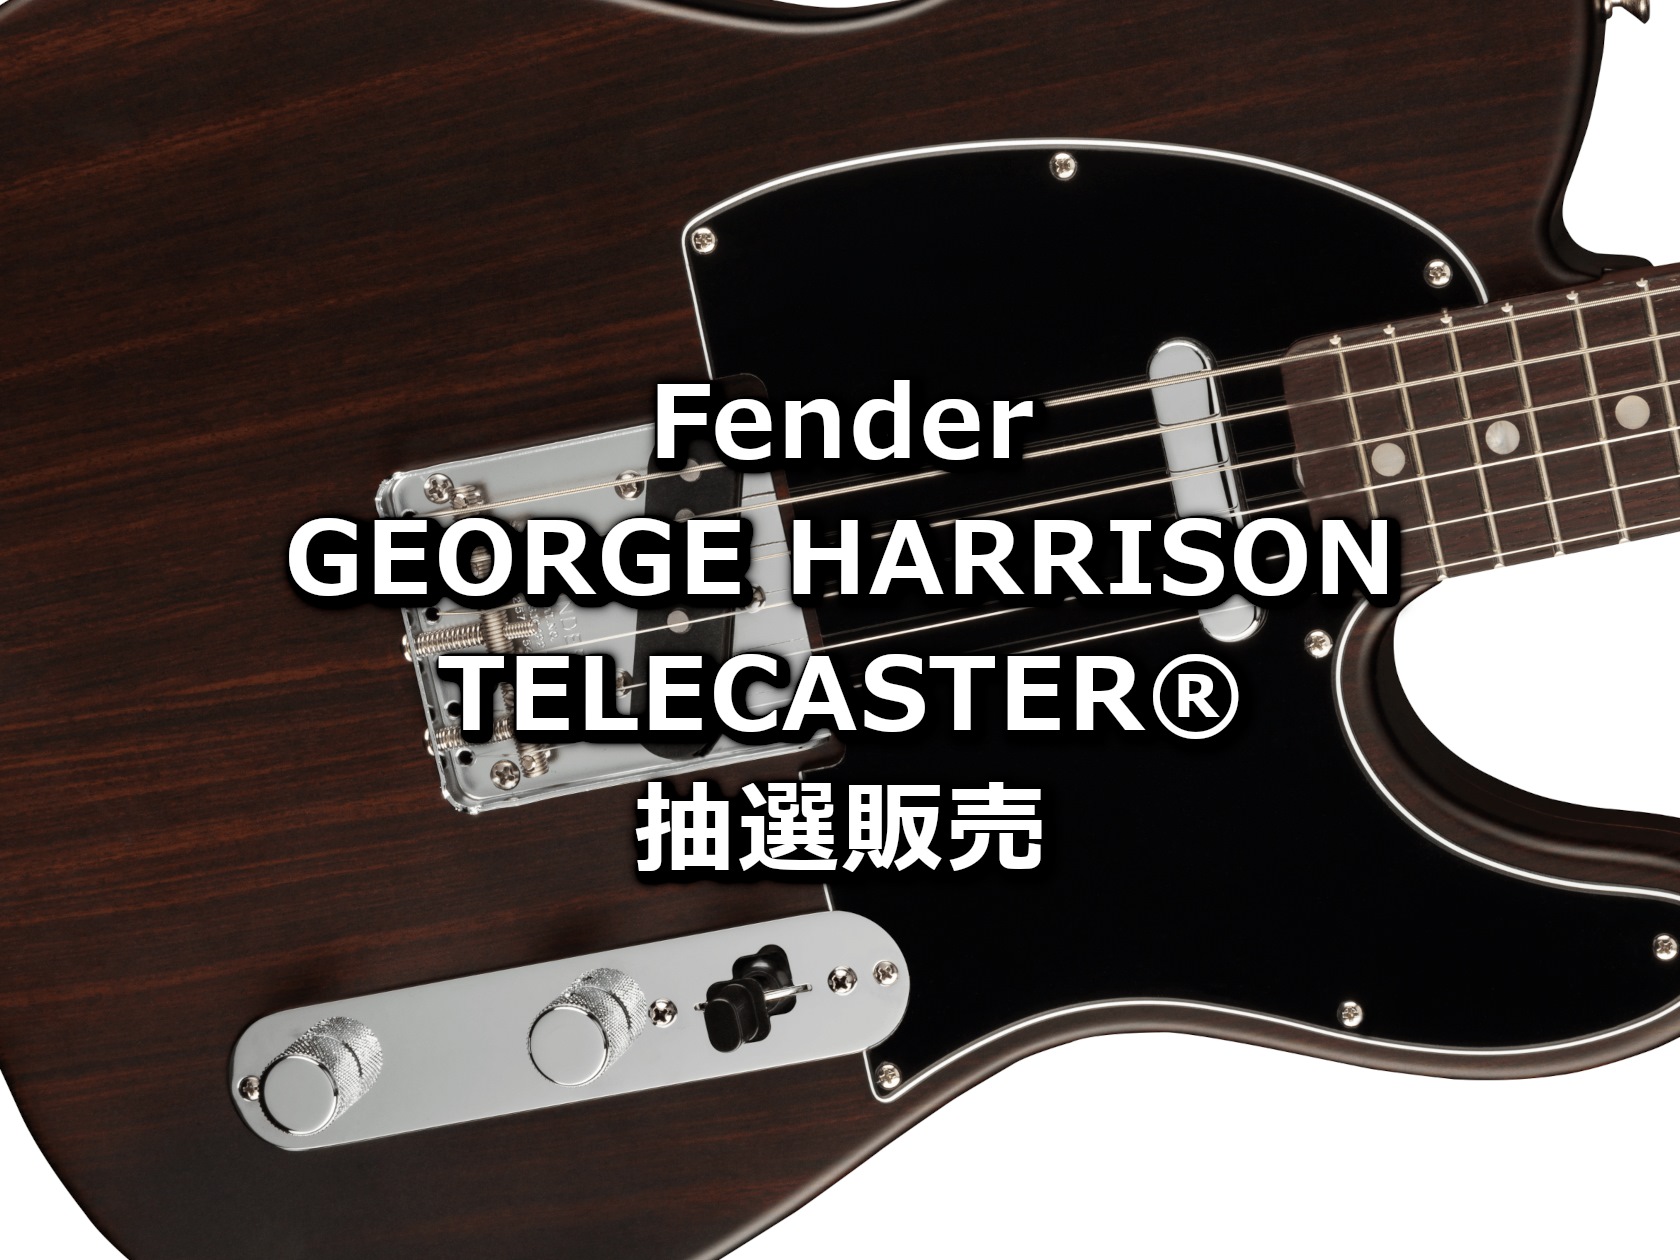 【受付終了】Fender GEORGE HARRISON TELECASTER® 抽選販売のご案内